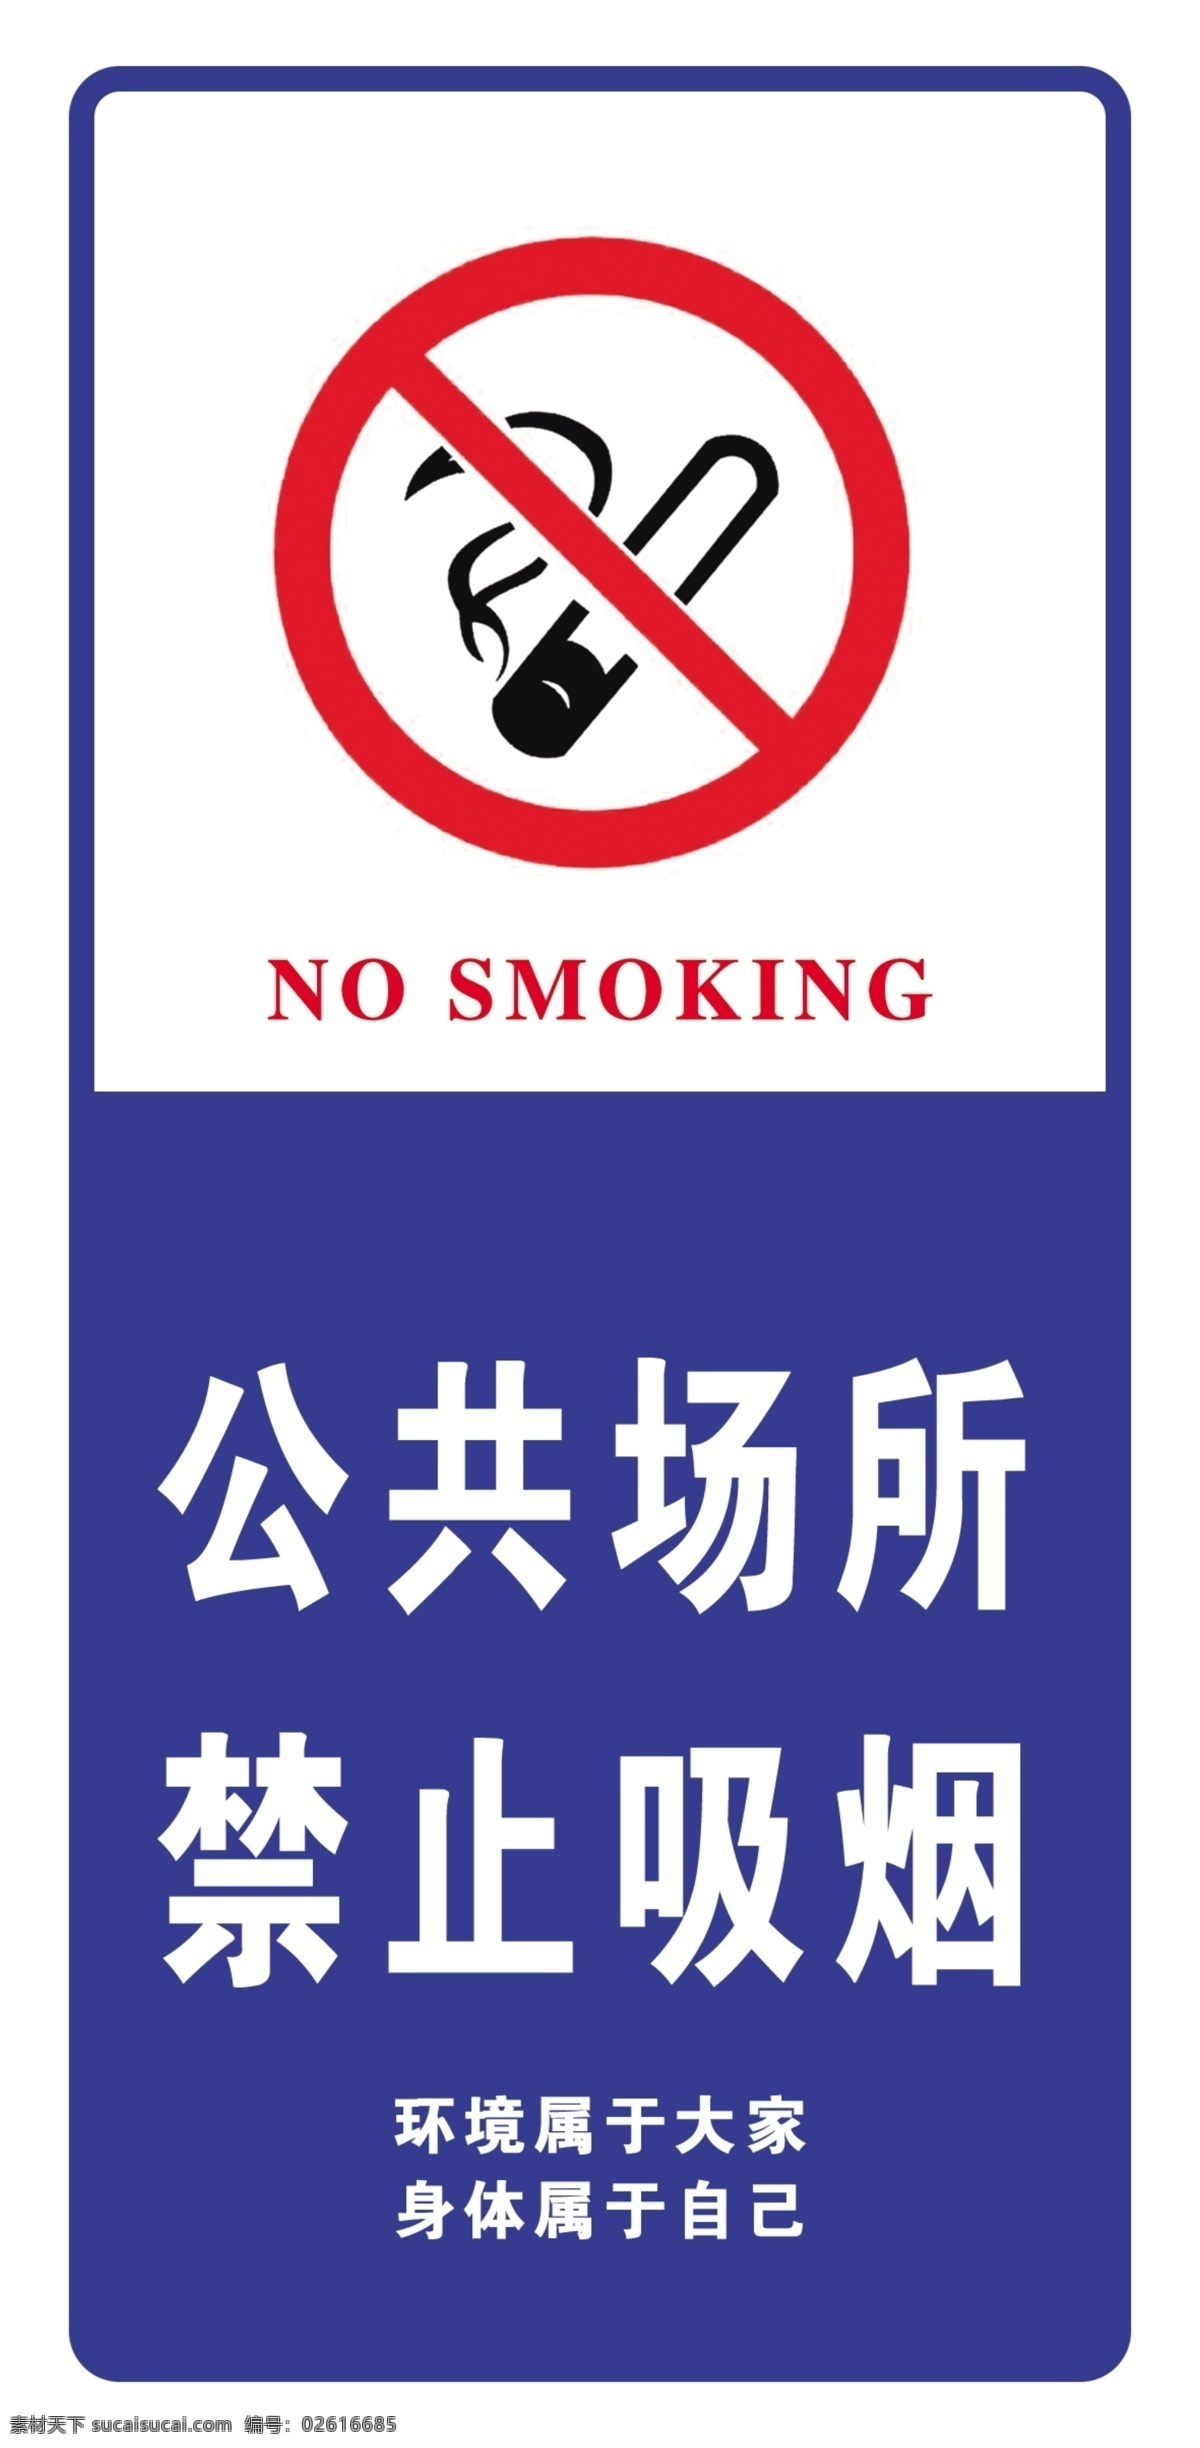 公共场所 禁止 吸烟 公共场所标识 影院危险标识 禁止烟火 火柴 危险标识 蓝色 红色